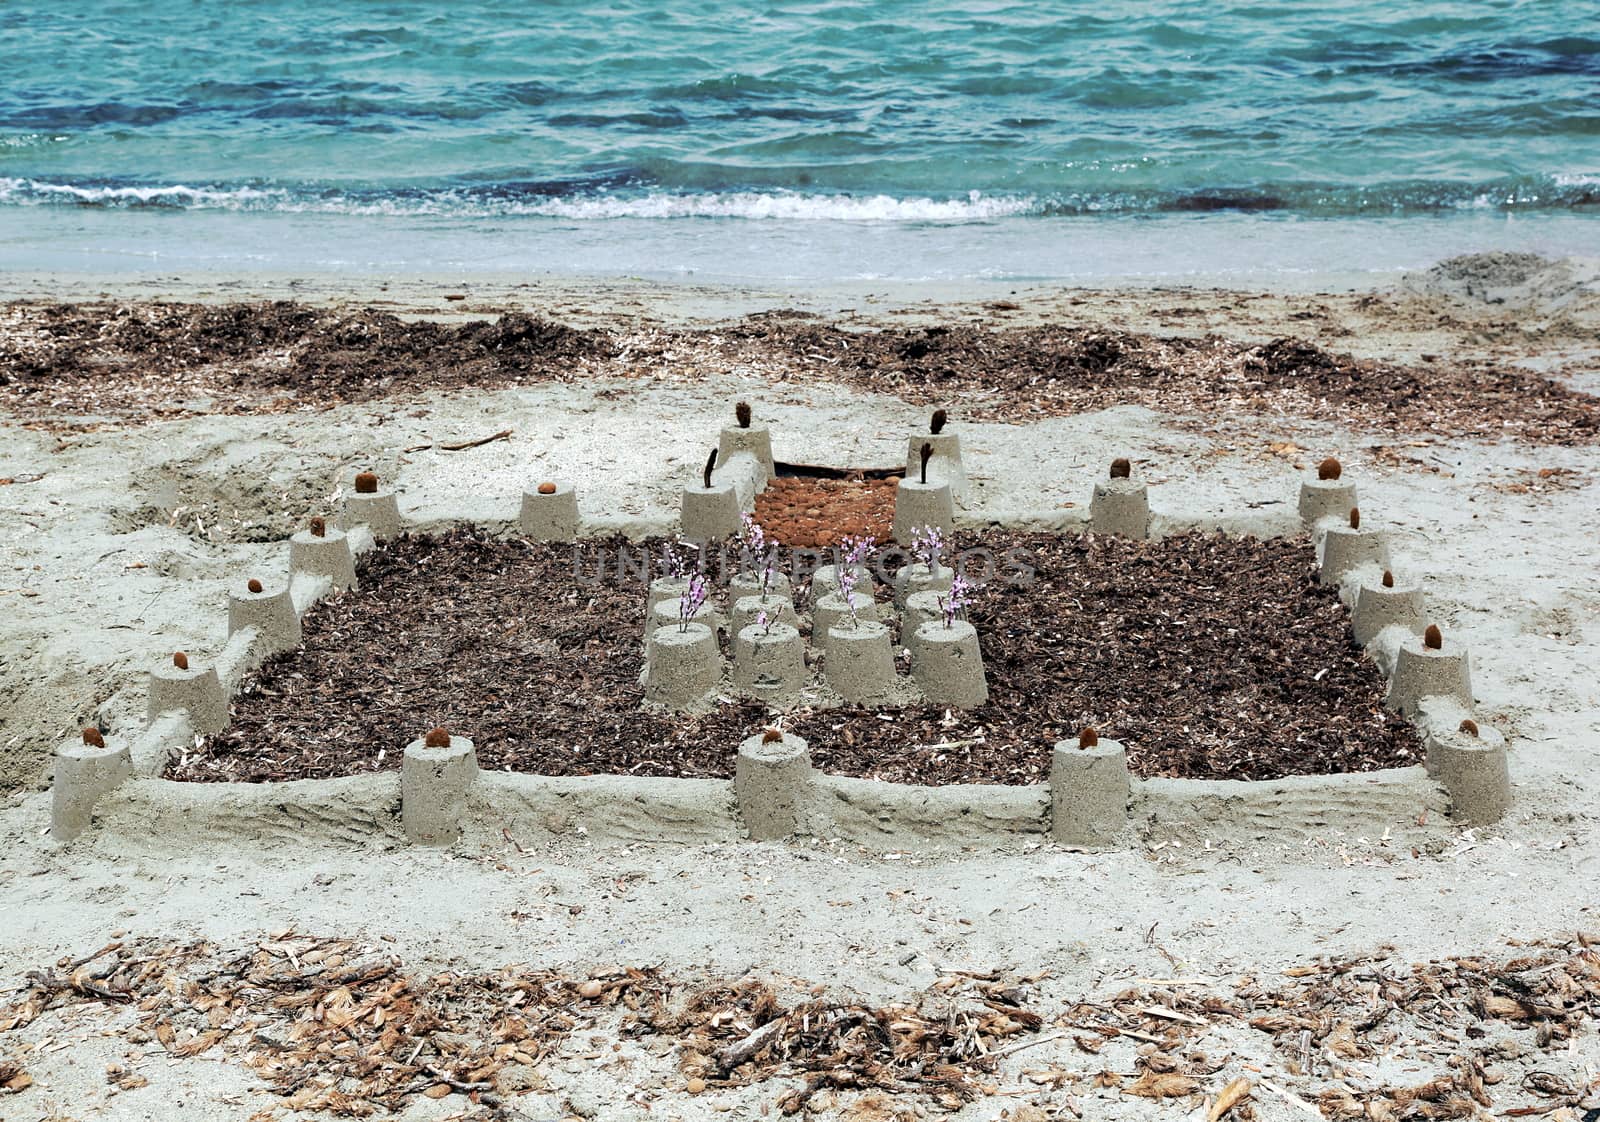 Big sand castle built on shore